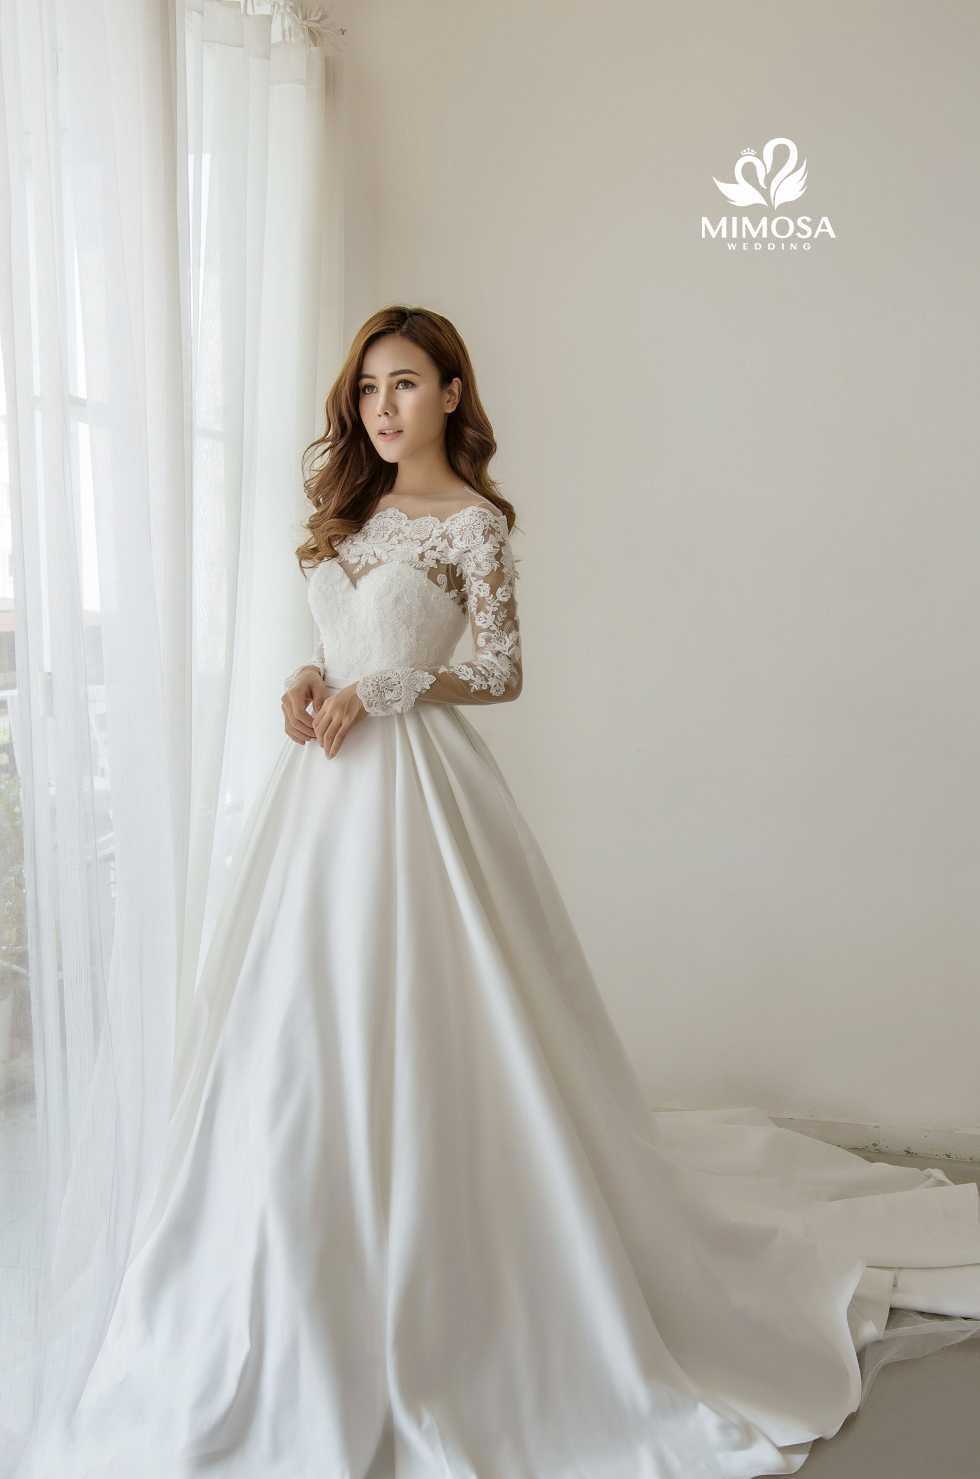 Xu hướng áo cưới Trung Quốc áo khỏa đẹp nhất 2023  NiNiStore